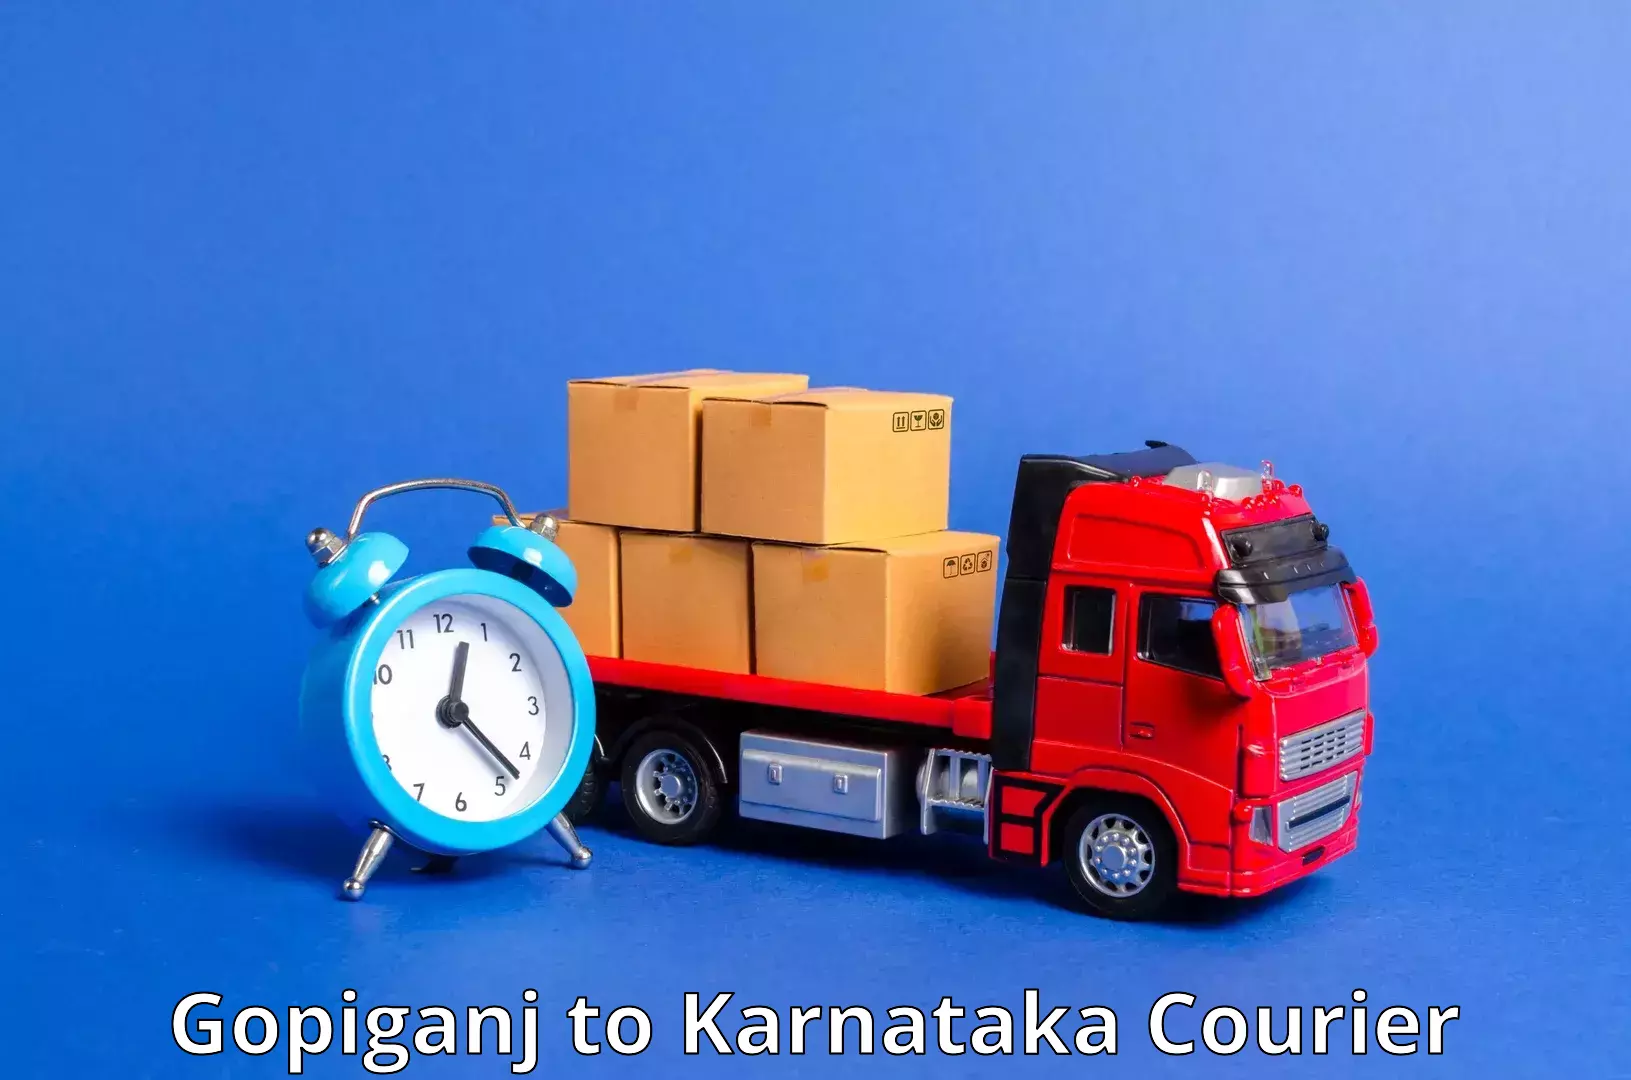 High-speed parcel service Gopiganj to Karnataka